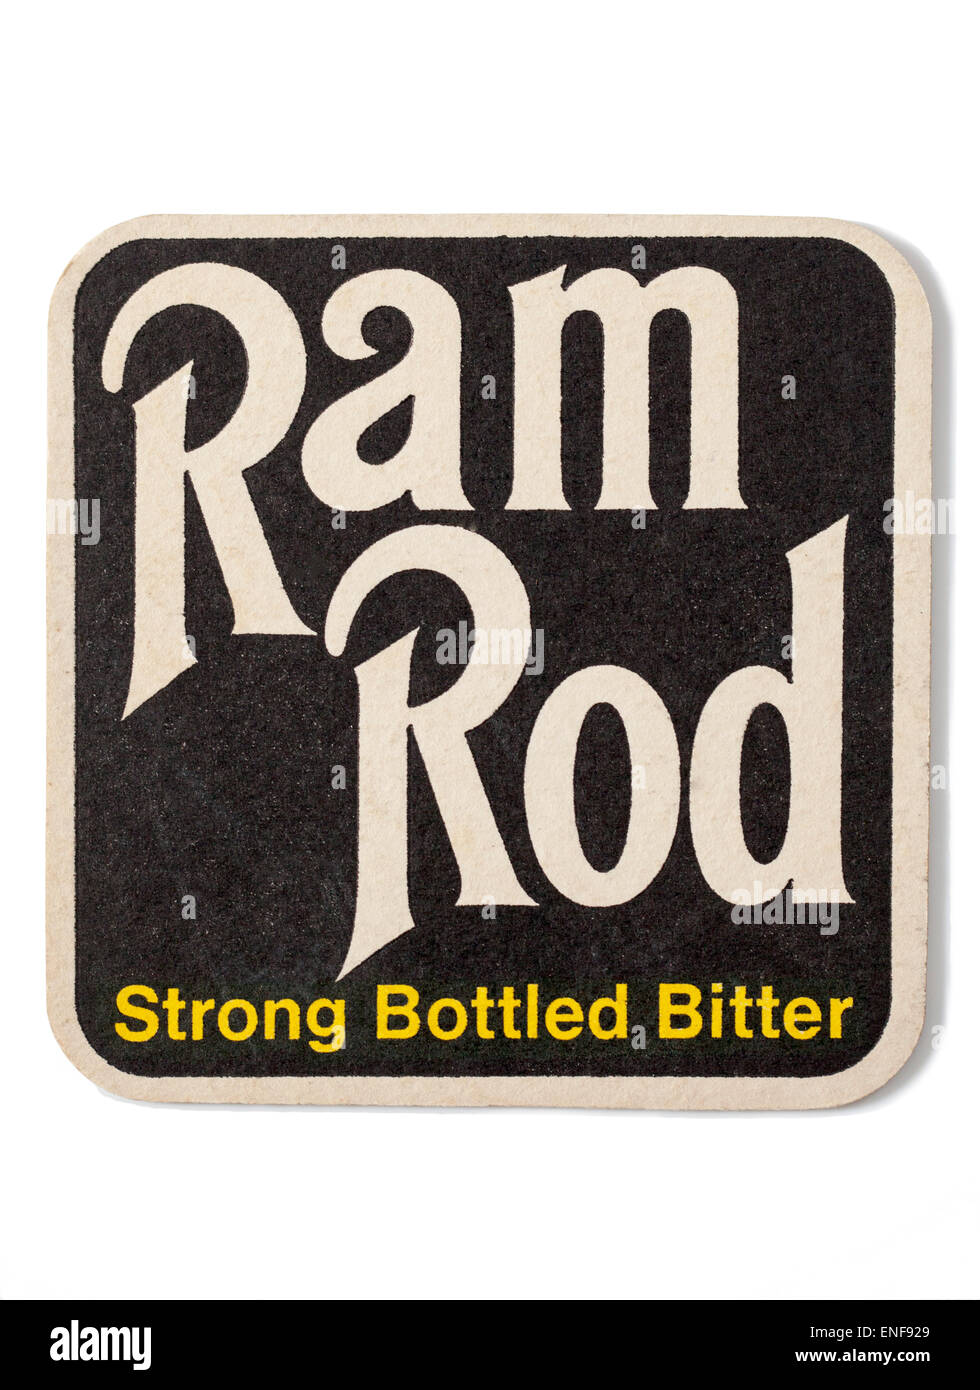 Vintage British vecchia pubblicità Beermat Youngs Brewery e asta di Ram forte in bottiglia di birra amaro Foto Stock